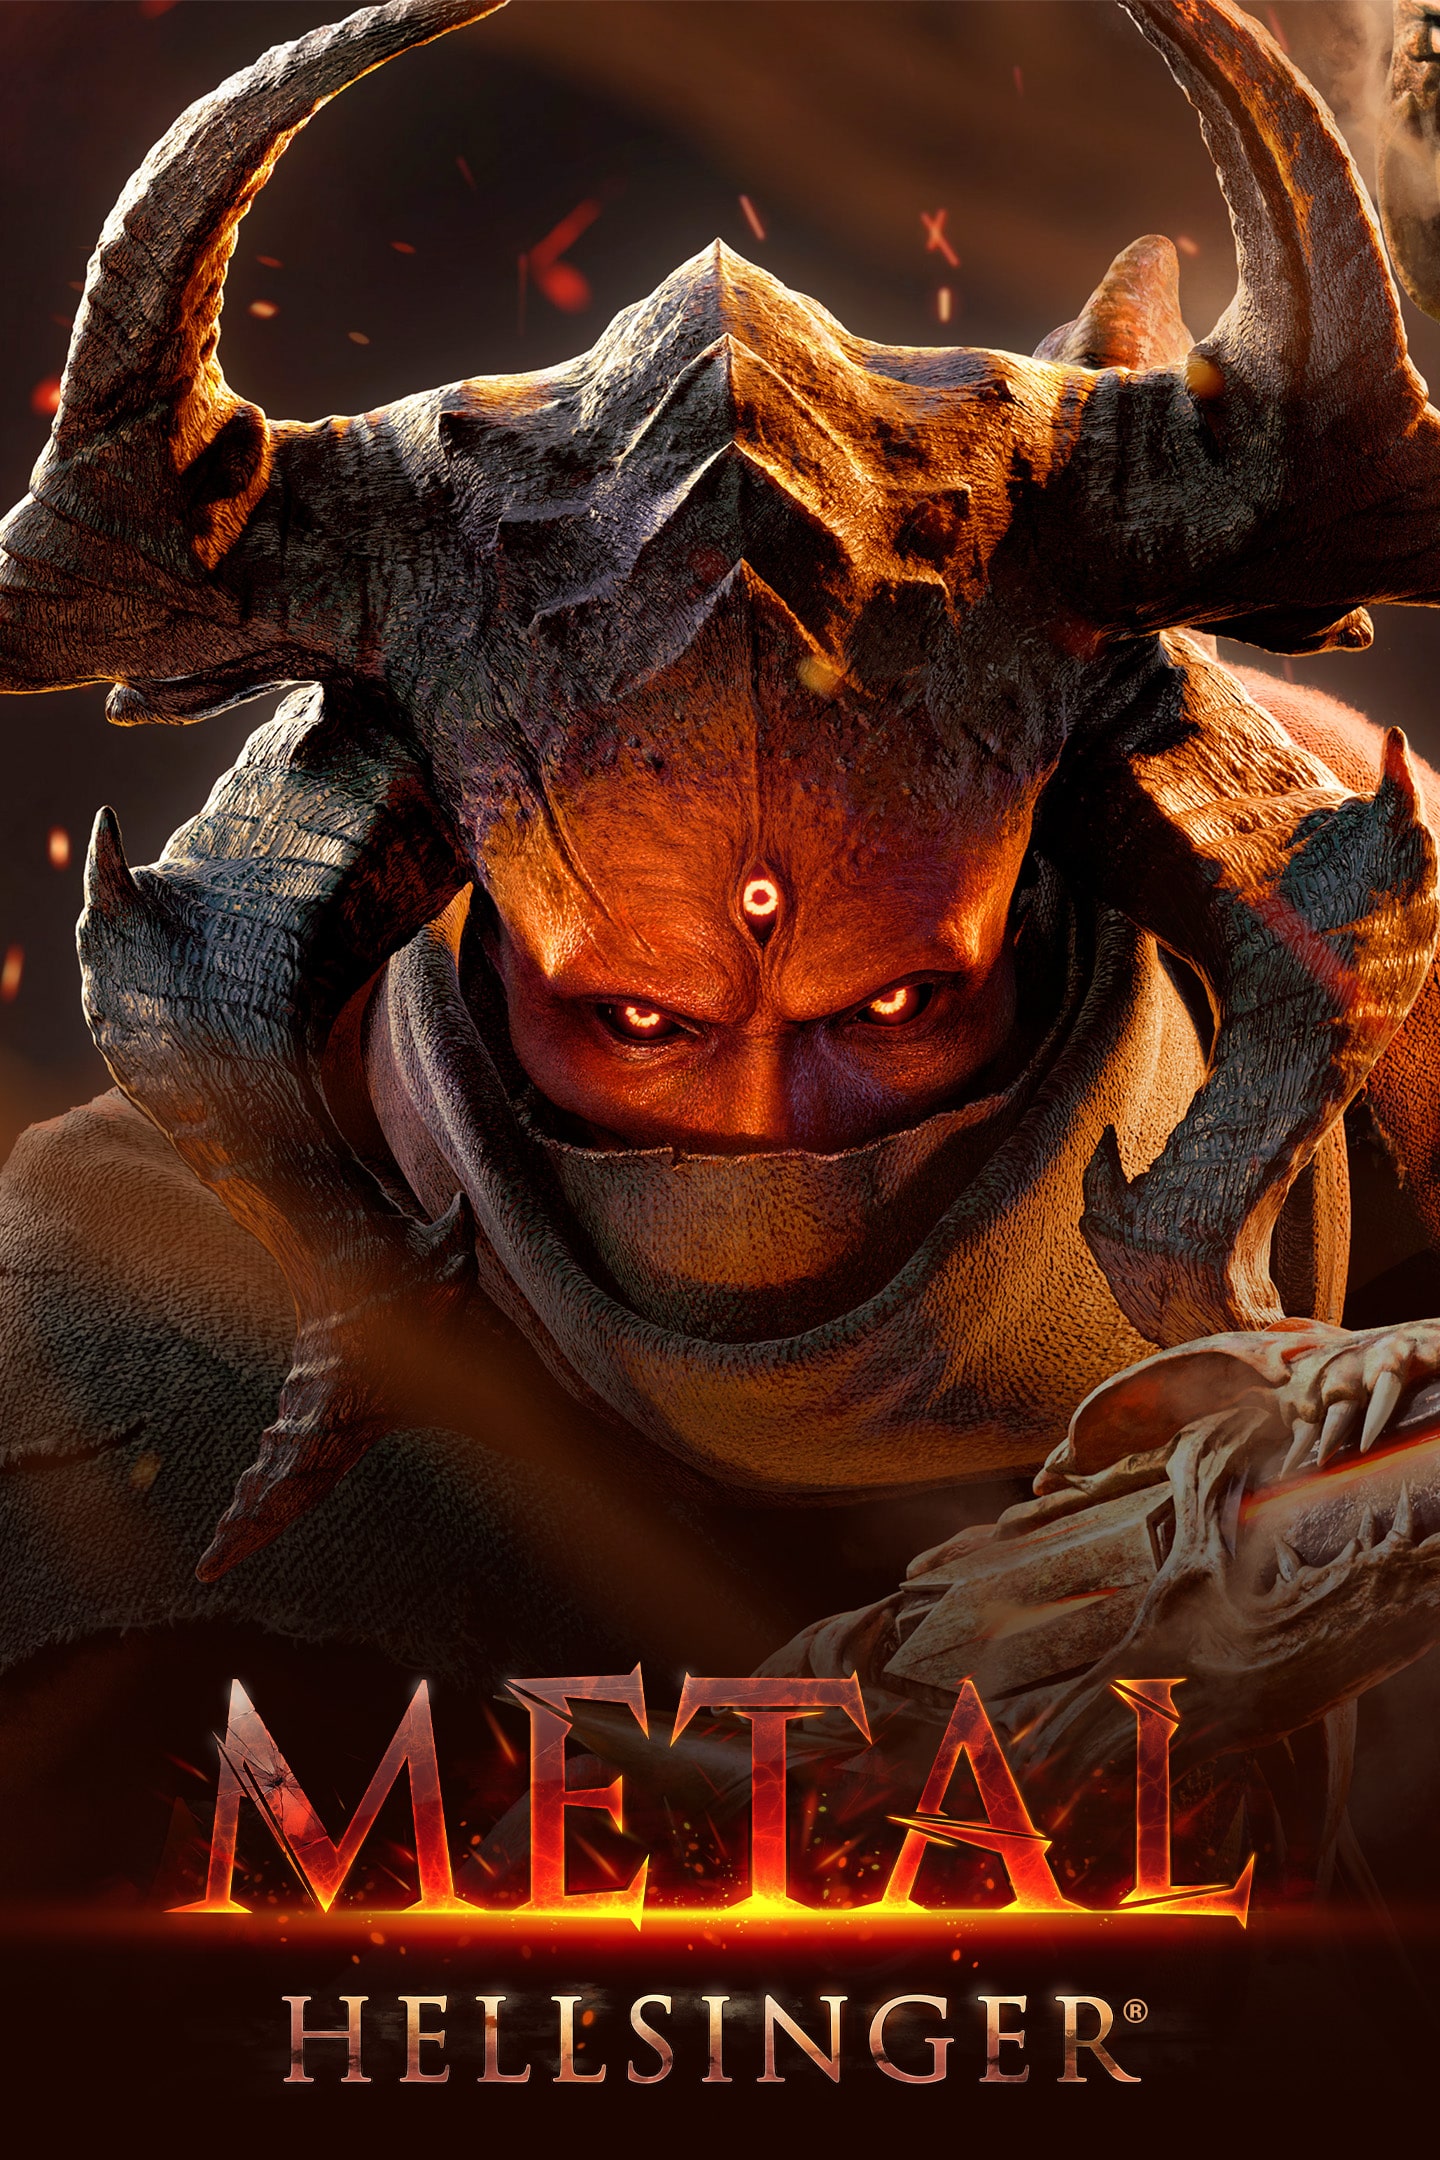 Metal: Hellsinger, Archdevil Mode